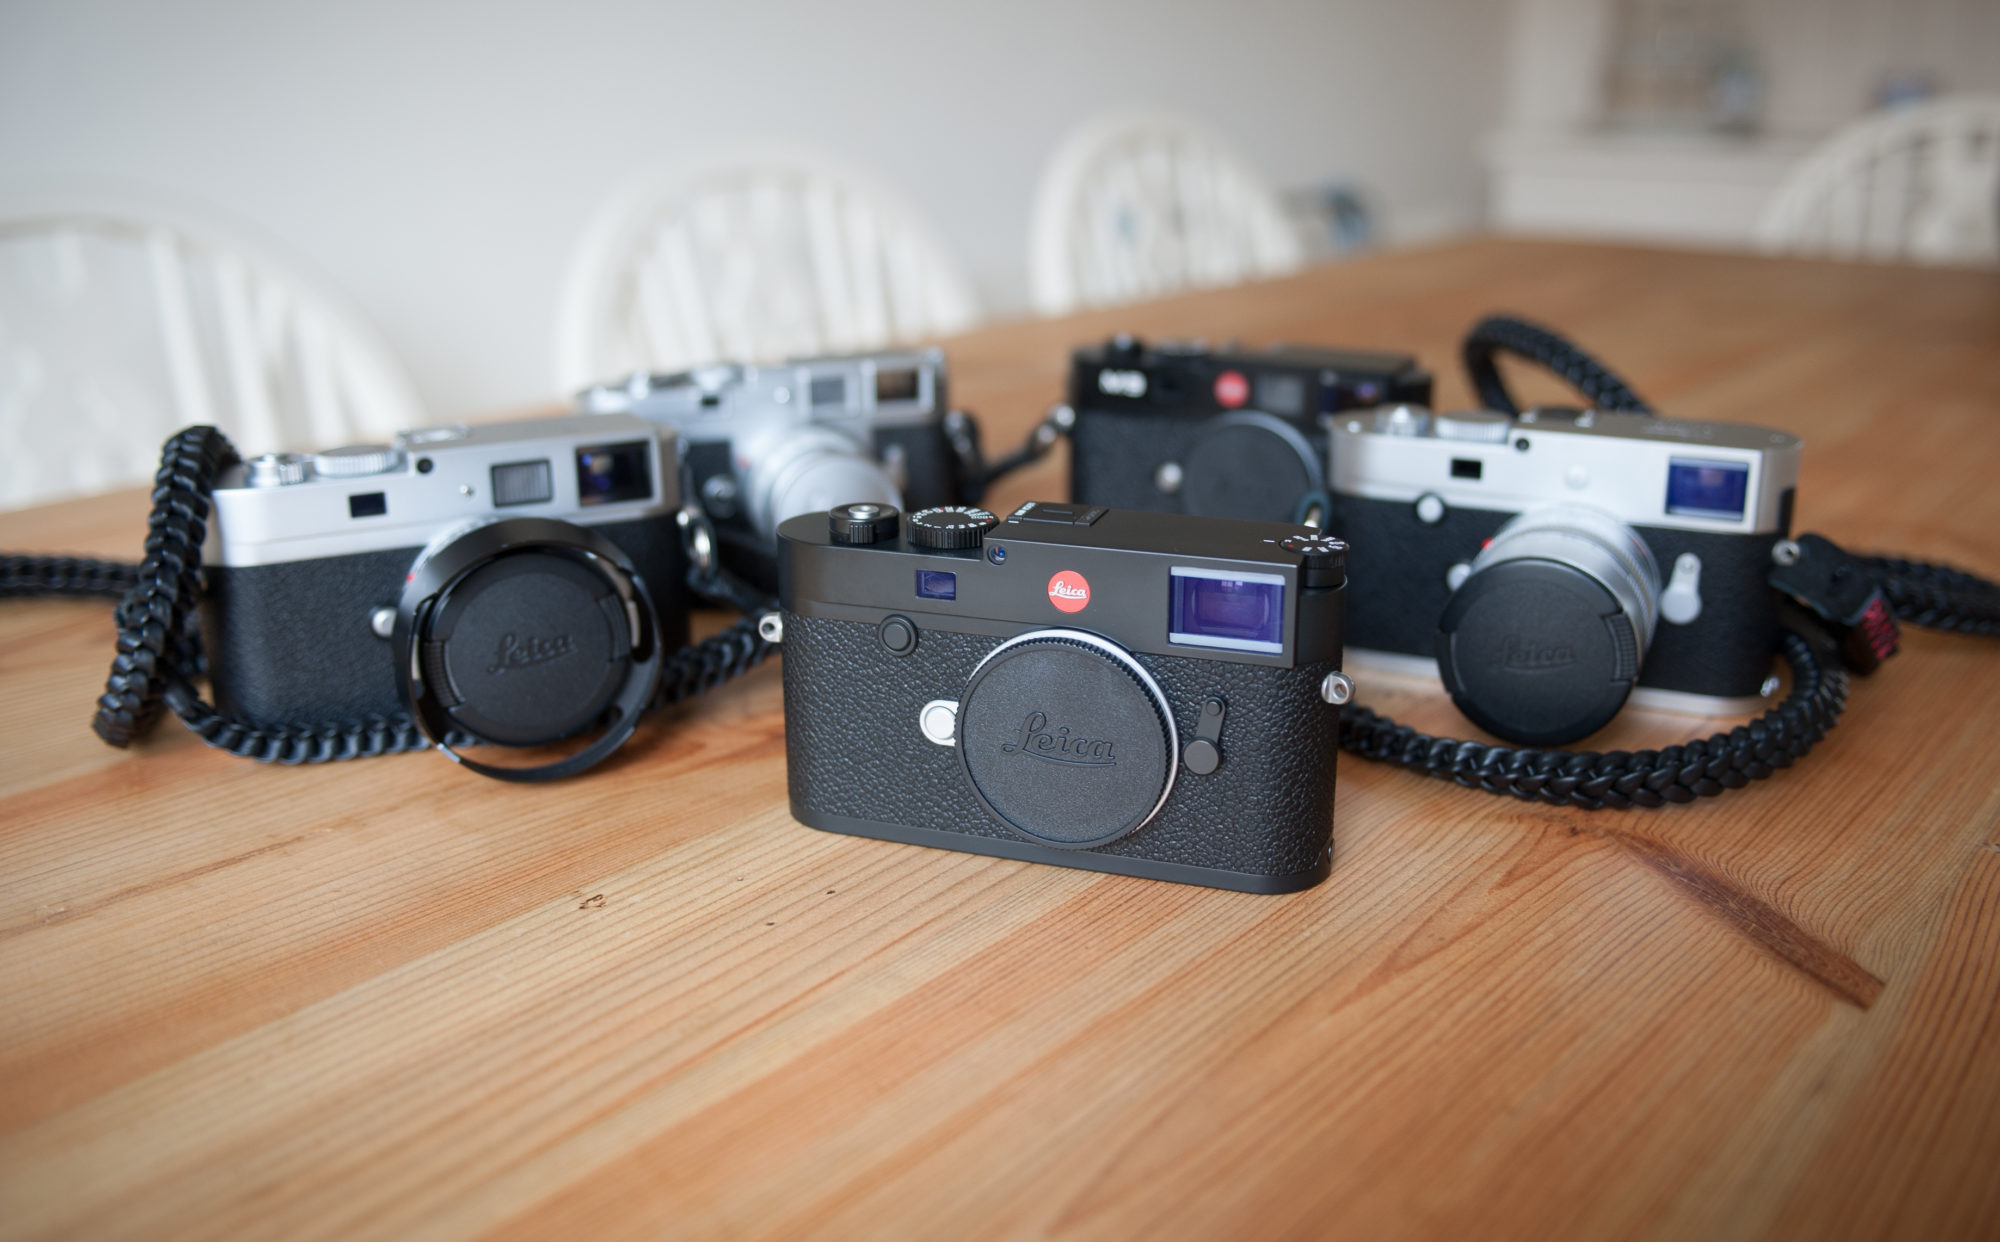 Leica M10, Leica M240, Leica M-P240, Leica M9, Leica M9-P and Leica M3